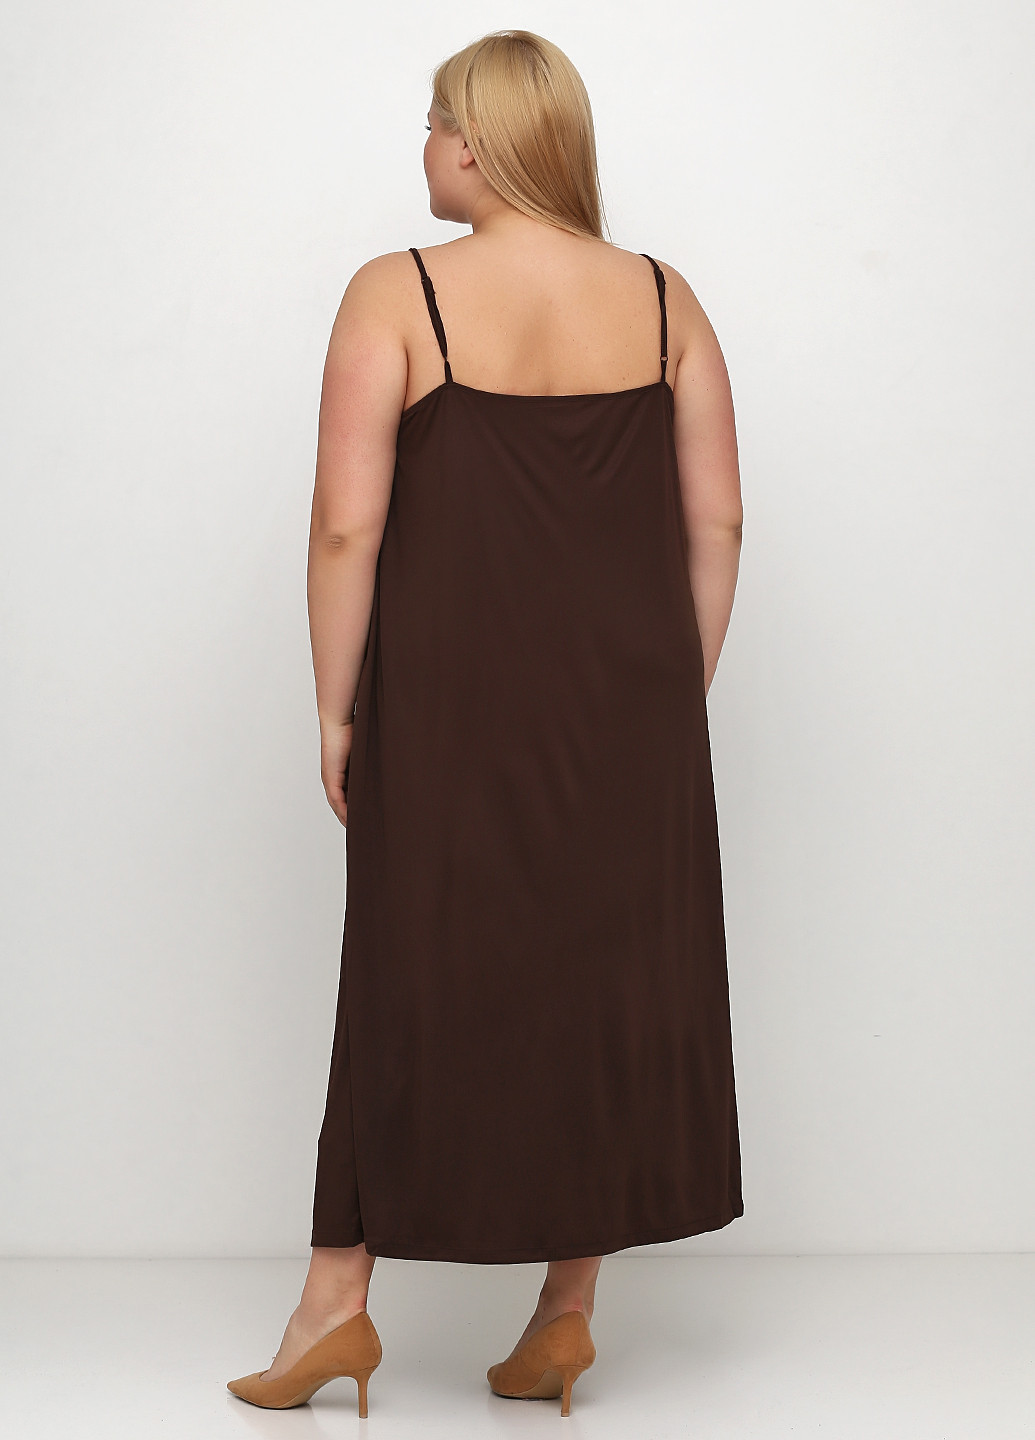 Сарафан H&M сукня-майка однотонний коричневий кежуал поліестер, трикотаж